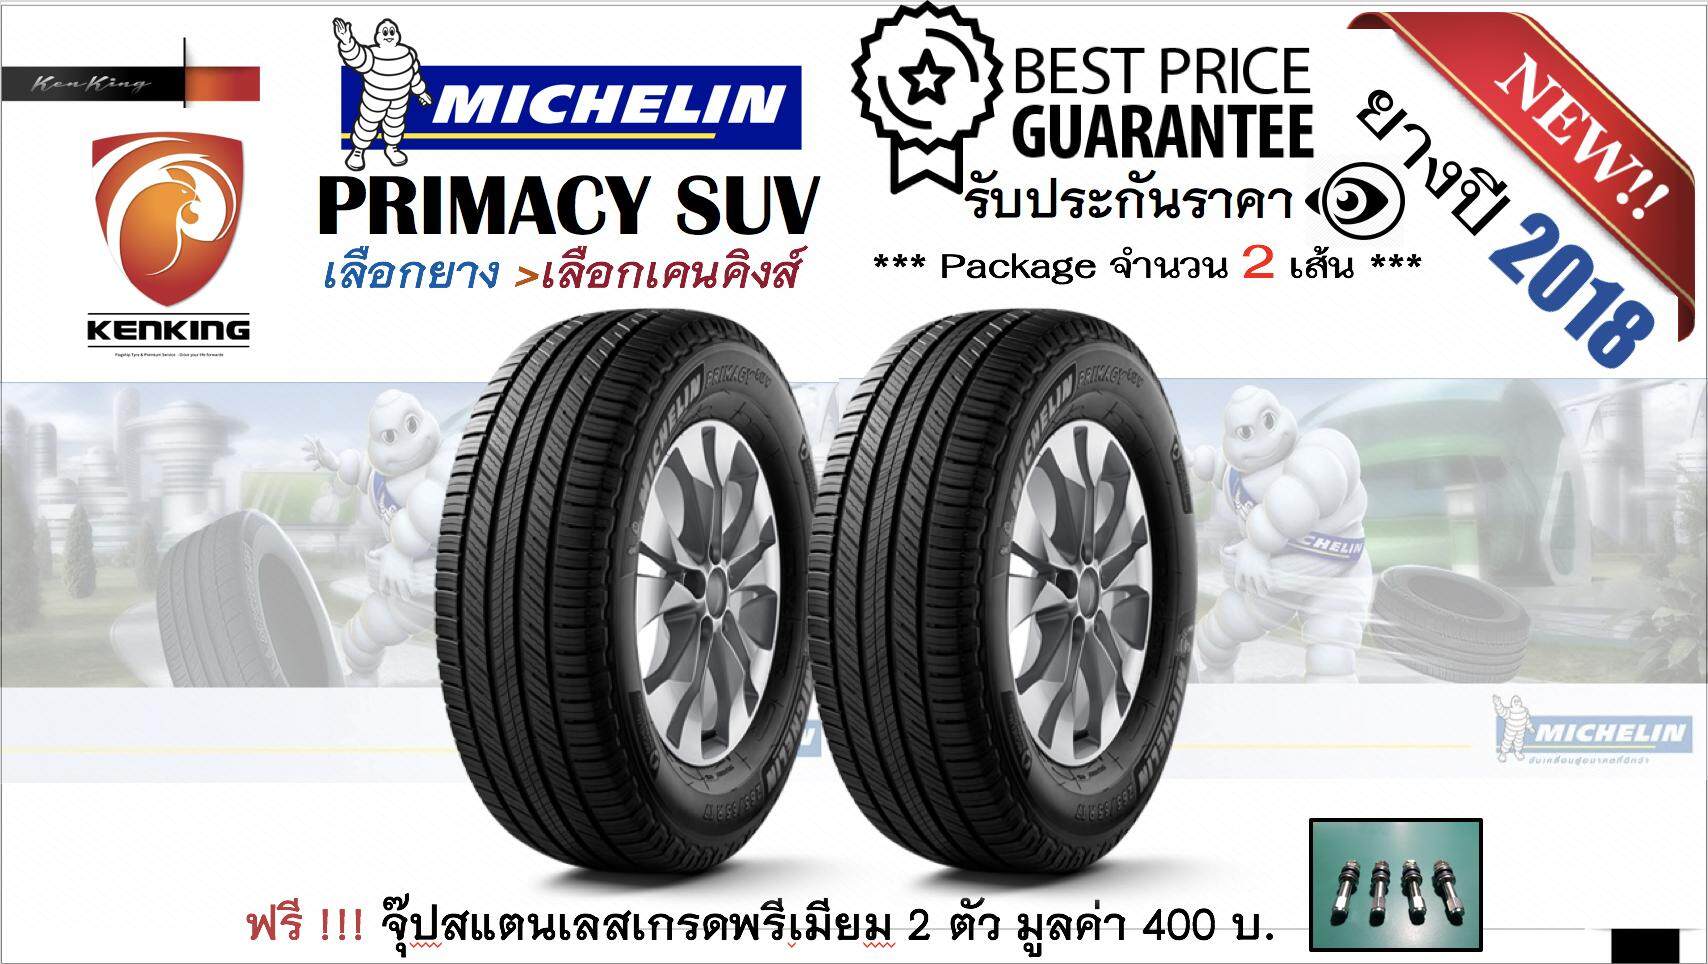 ประกันภัย รถยนต์ 2+ โคราชกรุงเทพมหานคร ยางรถยนต์ขอบ 16 Michelin มิชลิน NEW  ปี 2019    265/70 R16 Primacy SUV (จำนวน 2 เส้น) ฟรี    จุ๊ปสแตนเลสเกรด Premium มูลค่า 400 บาท